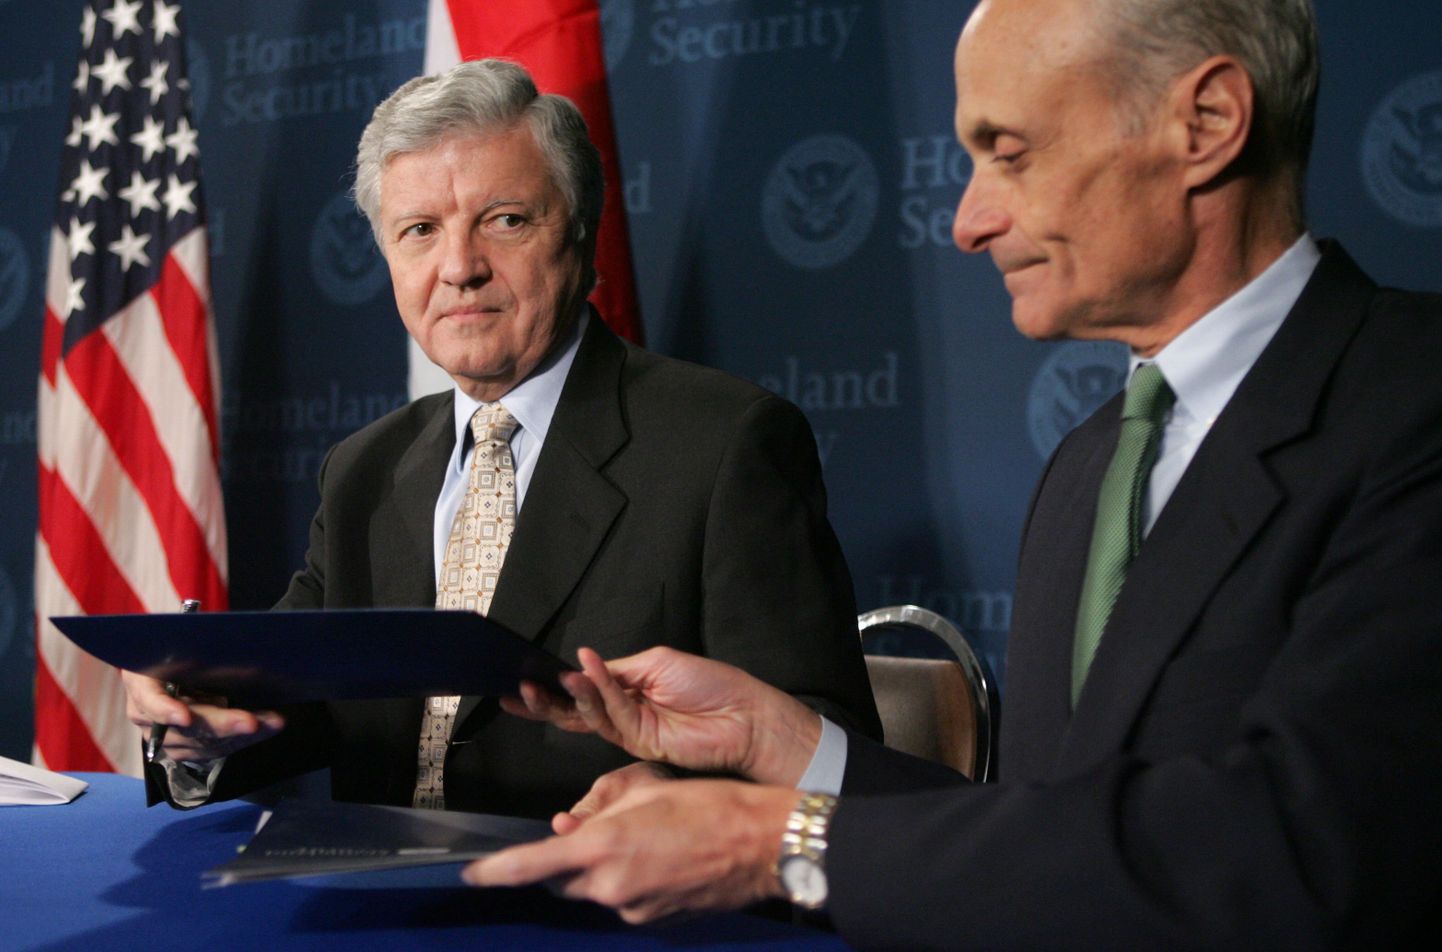 USA sisejulgeoleku sekretät Michael Chertoff (paremak) esitamas viisavabastusprogrammi üksteisemõistmise memorandumit Ungari suursaadikule Washingtonis.